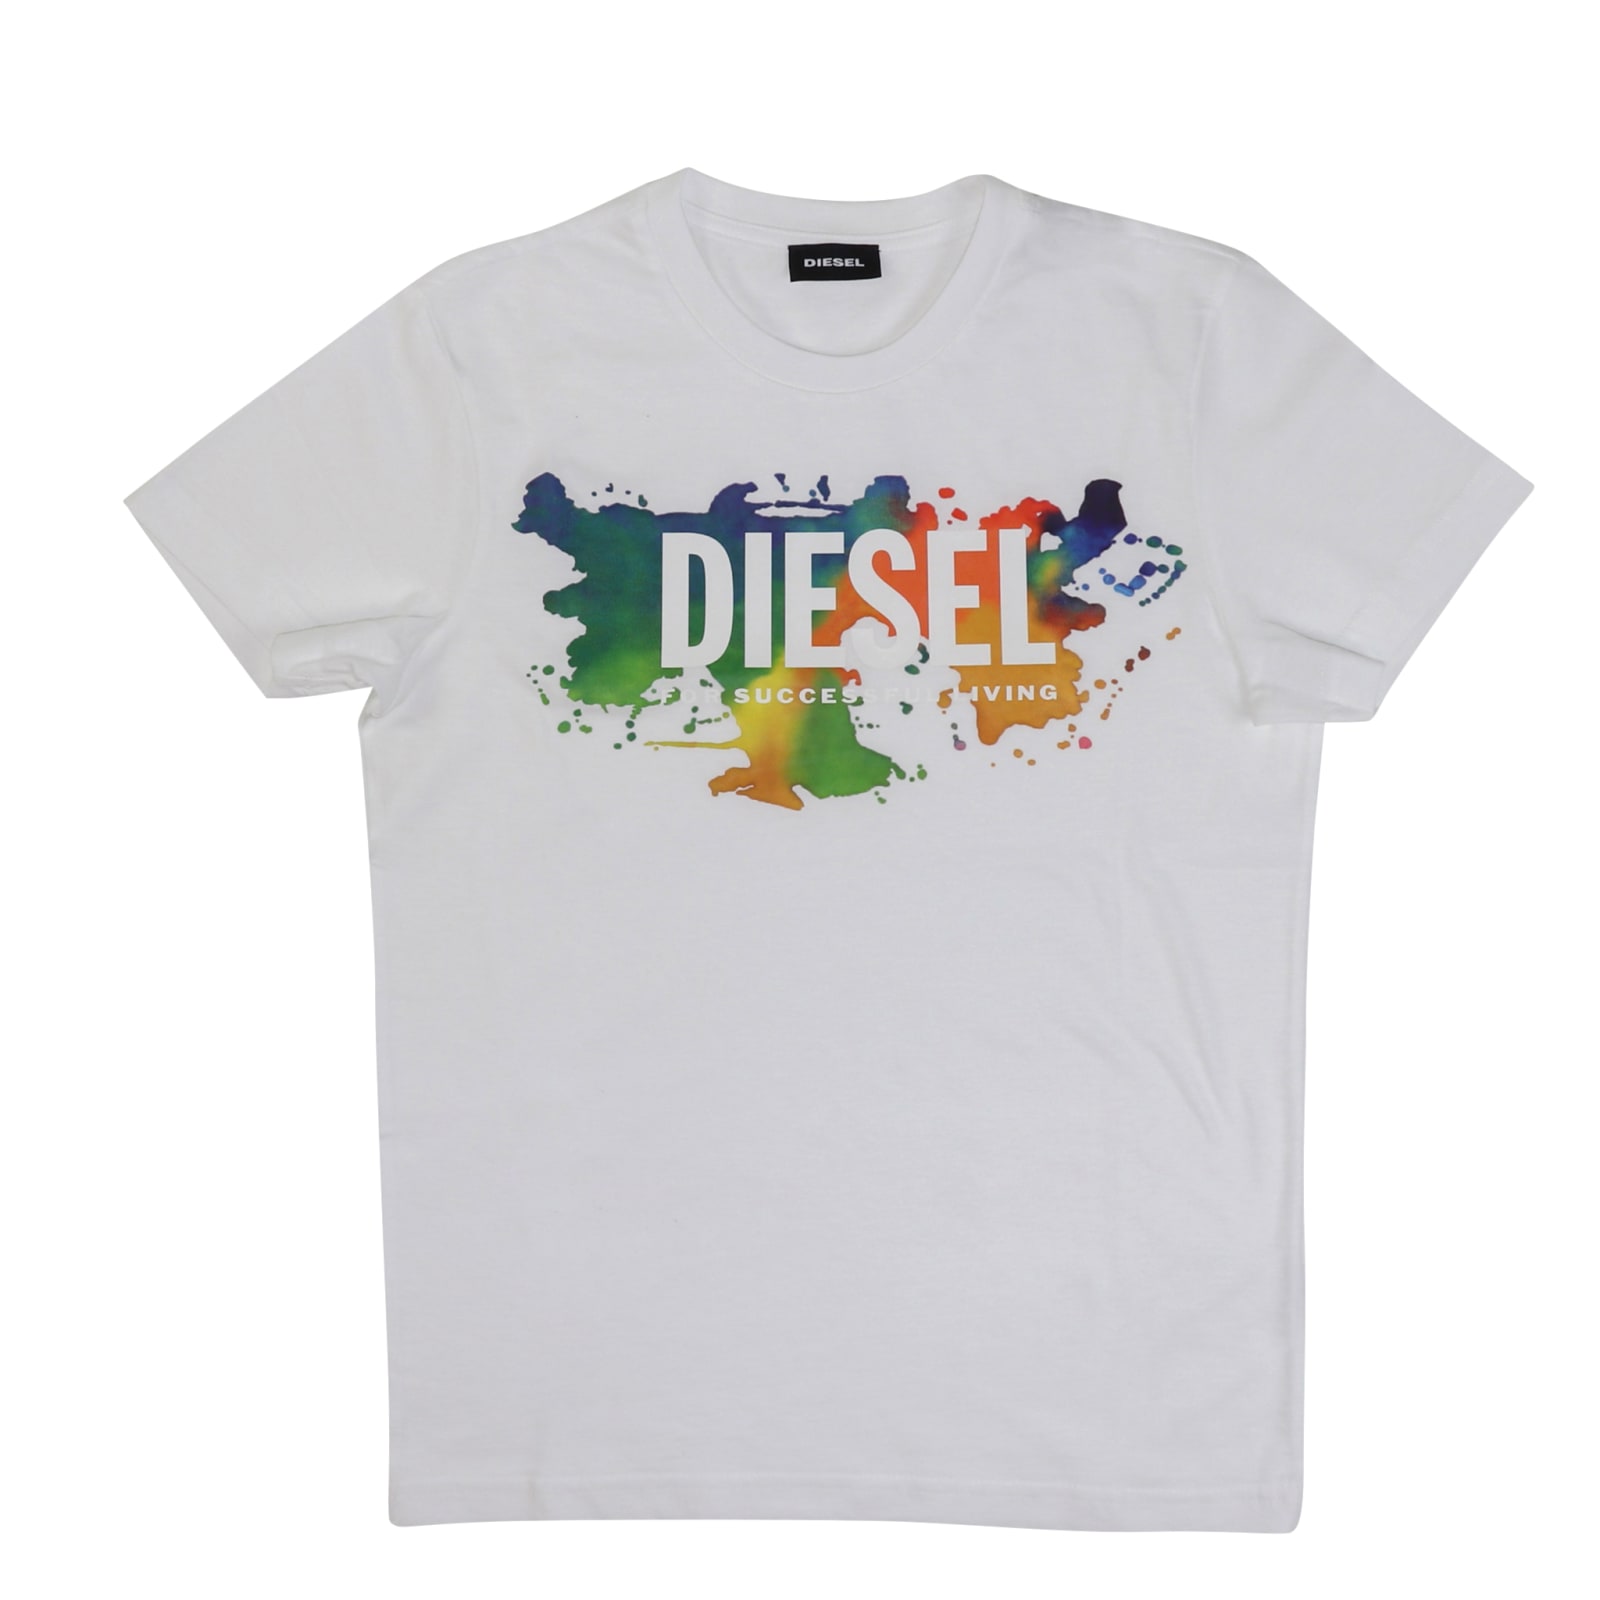 Diesel Tdosky T-shirt